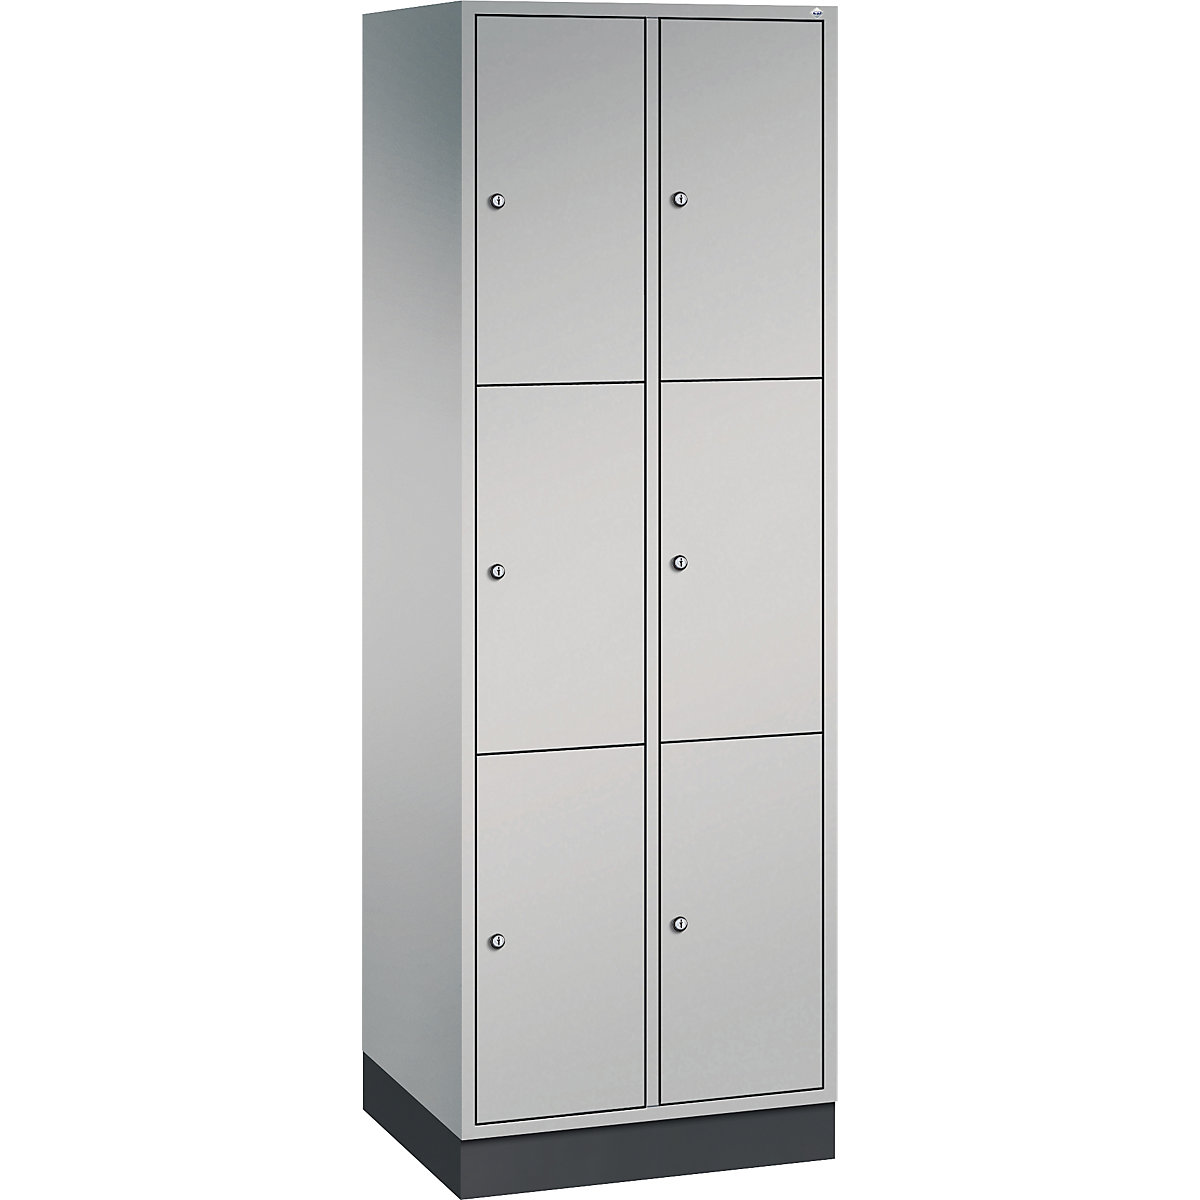 INTRO steel compartment locker, compartment height 580 mm – C+P, WxD 620 x 500 mm, 6 compartments, white aluminium body, white aluminium doors